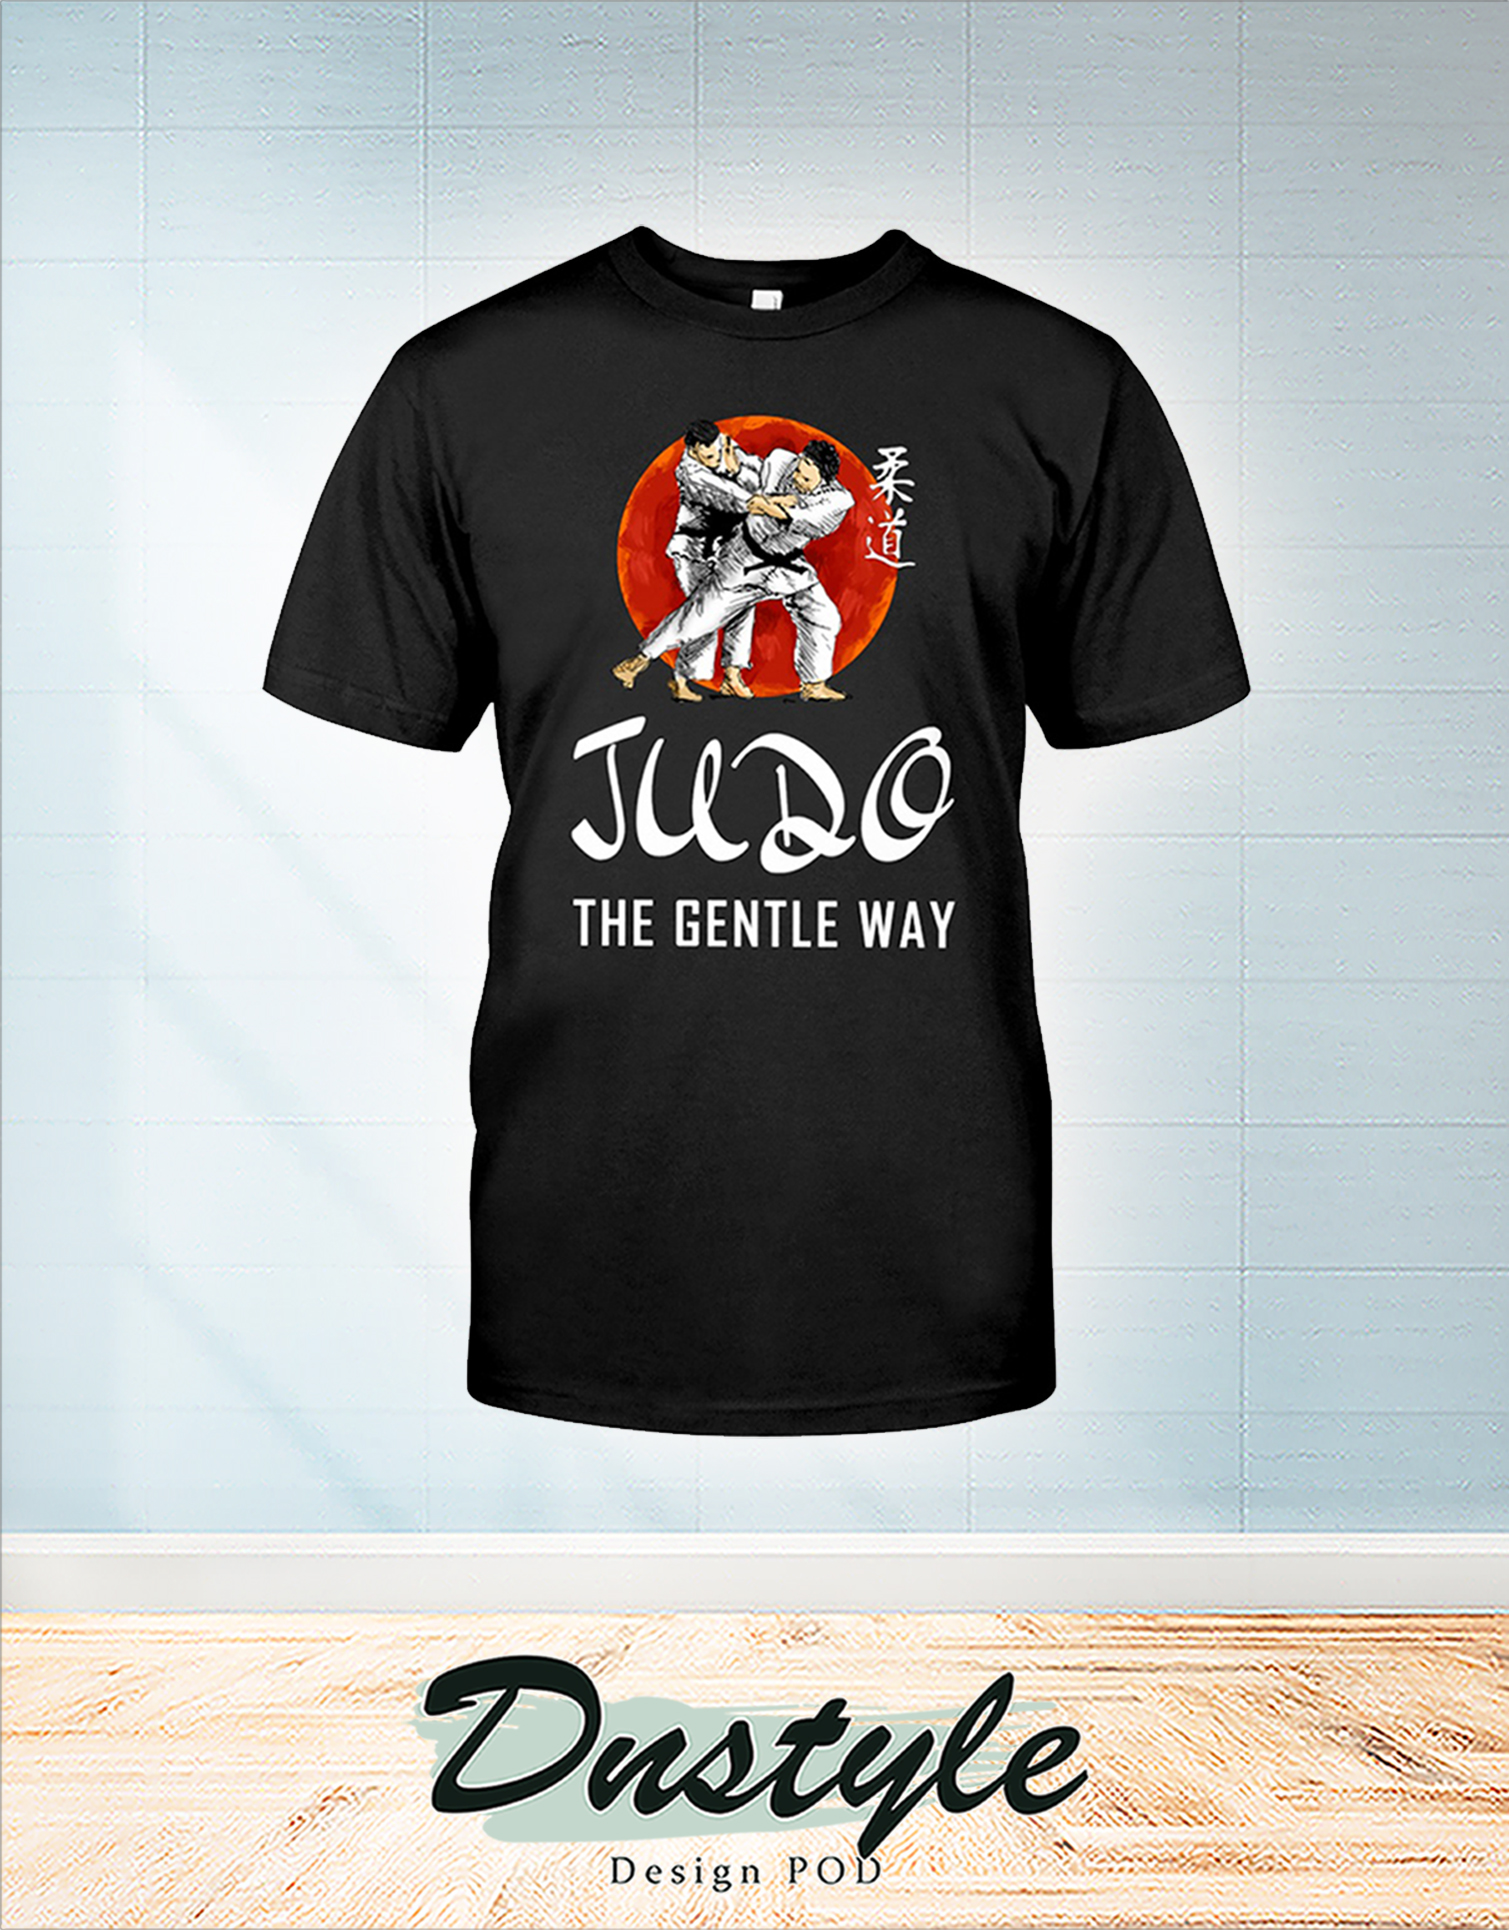 JUDO the gentle way shirt